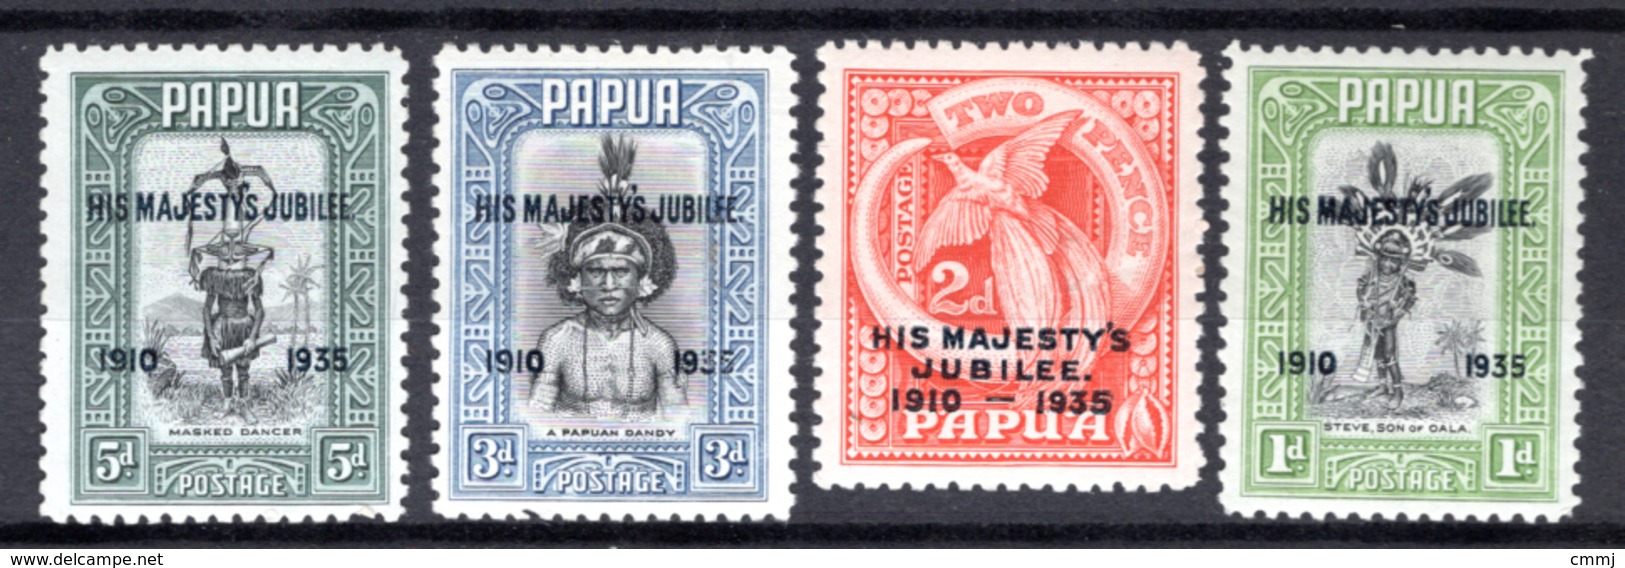 1935 - PAPUA - Mi. Nr.  99/102 -  LH  - (K-EA-361388.5) - Papua New Guinea